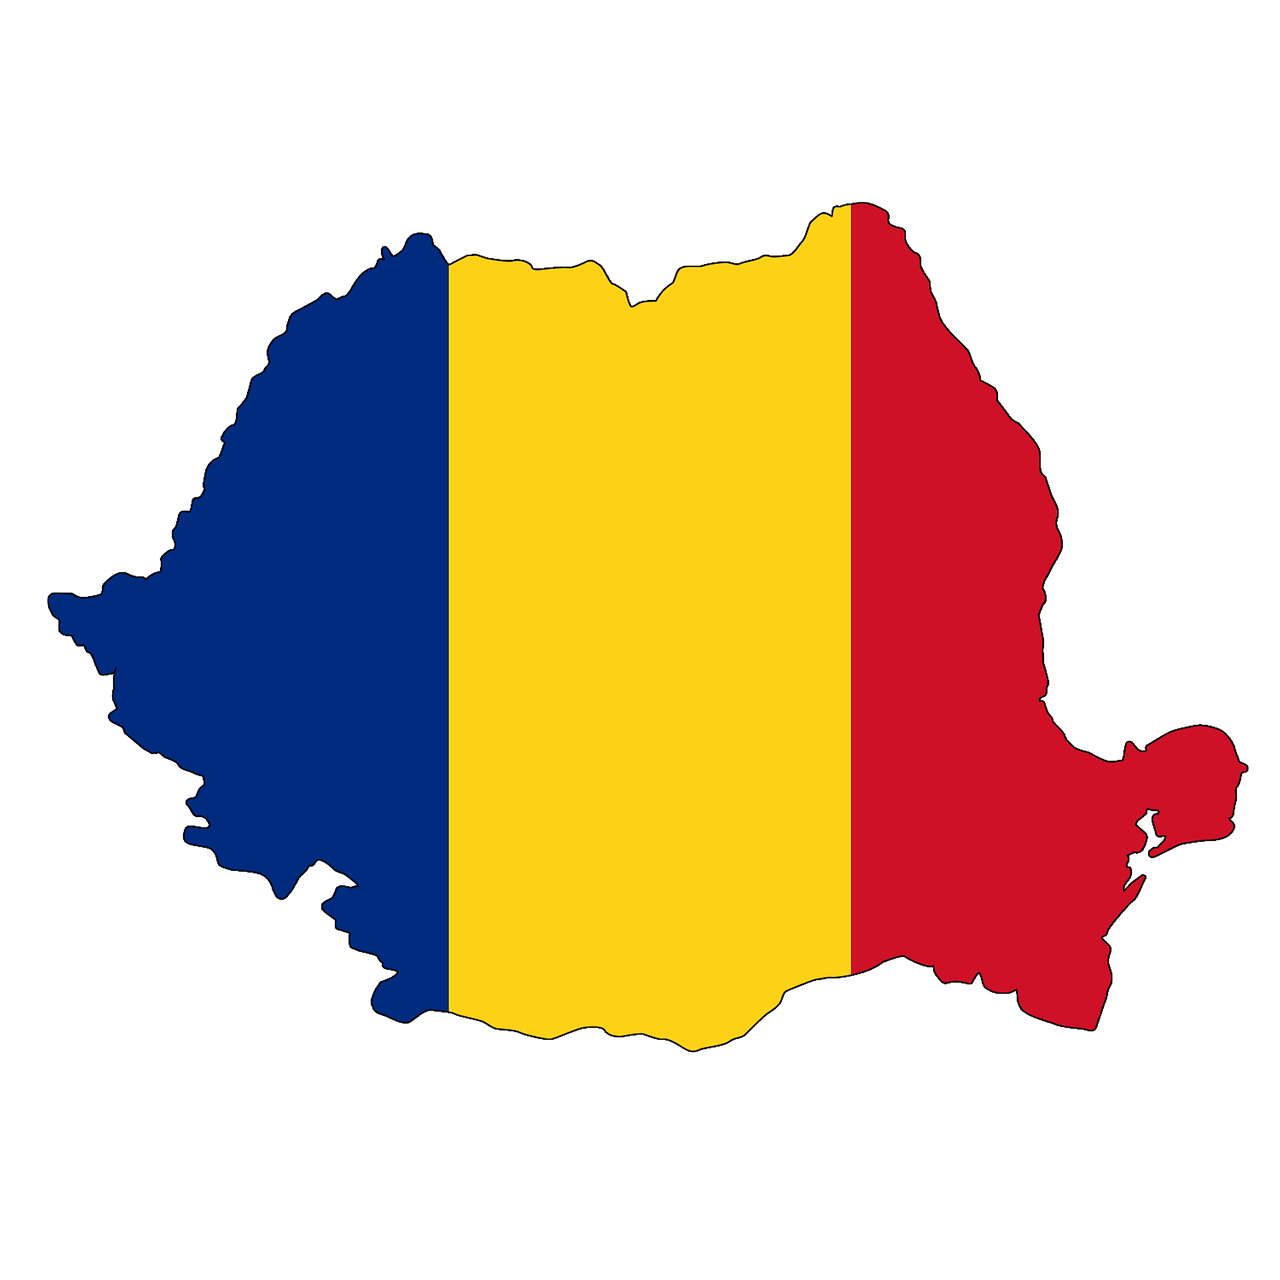 Lukt het in Roemenië niet meer, dan maar een registratie in Nederland